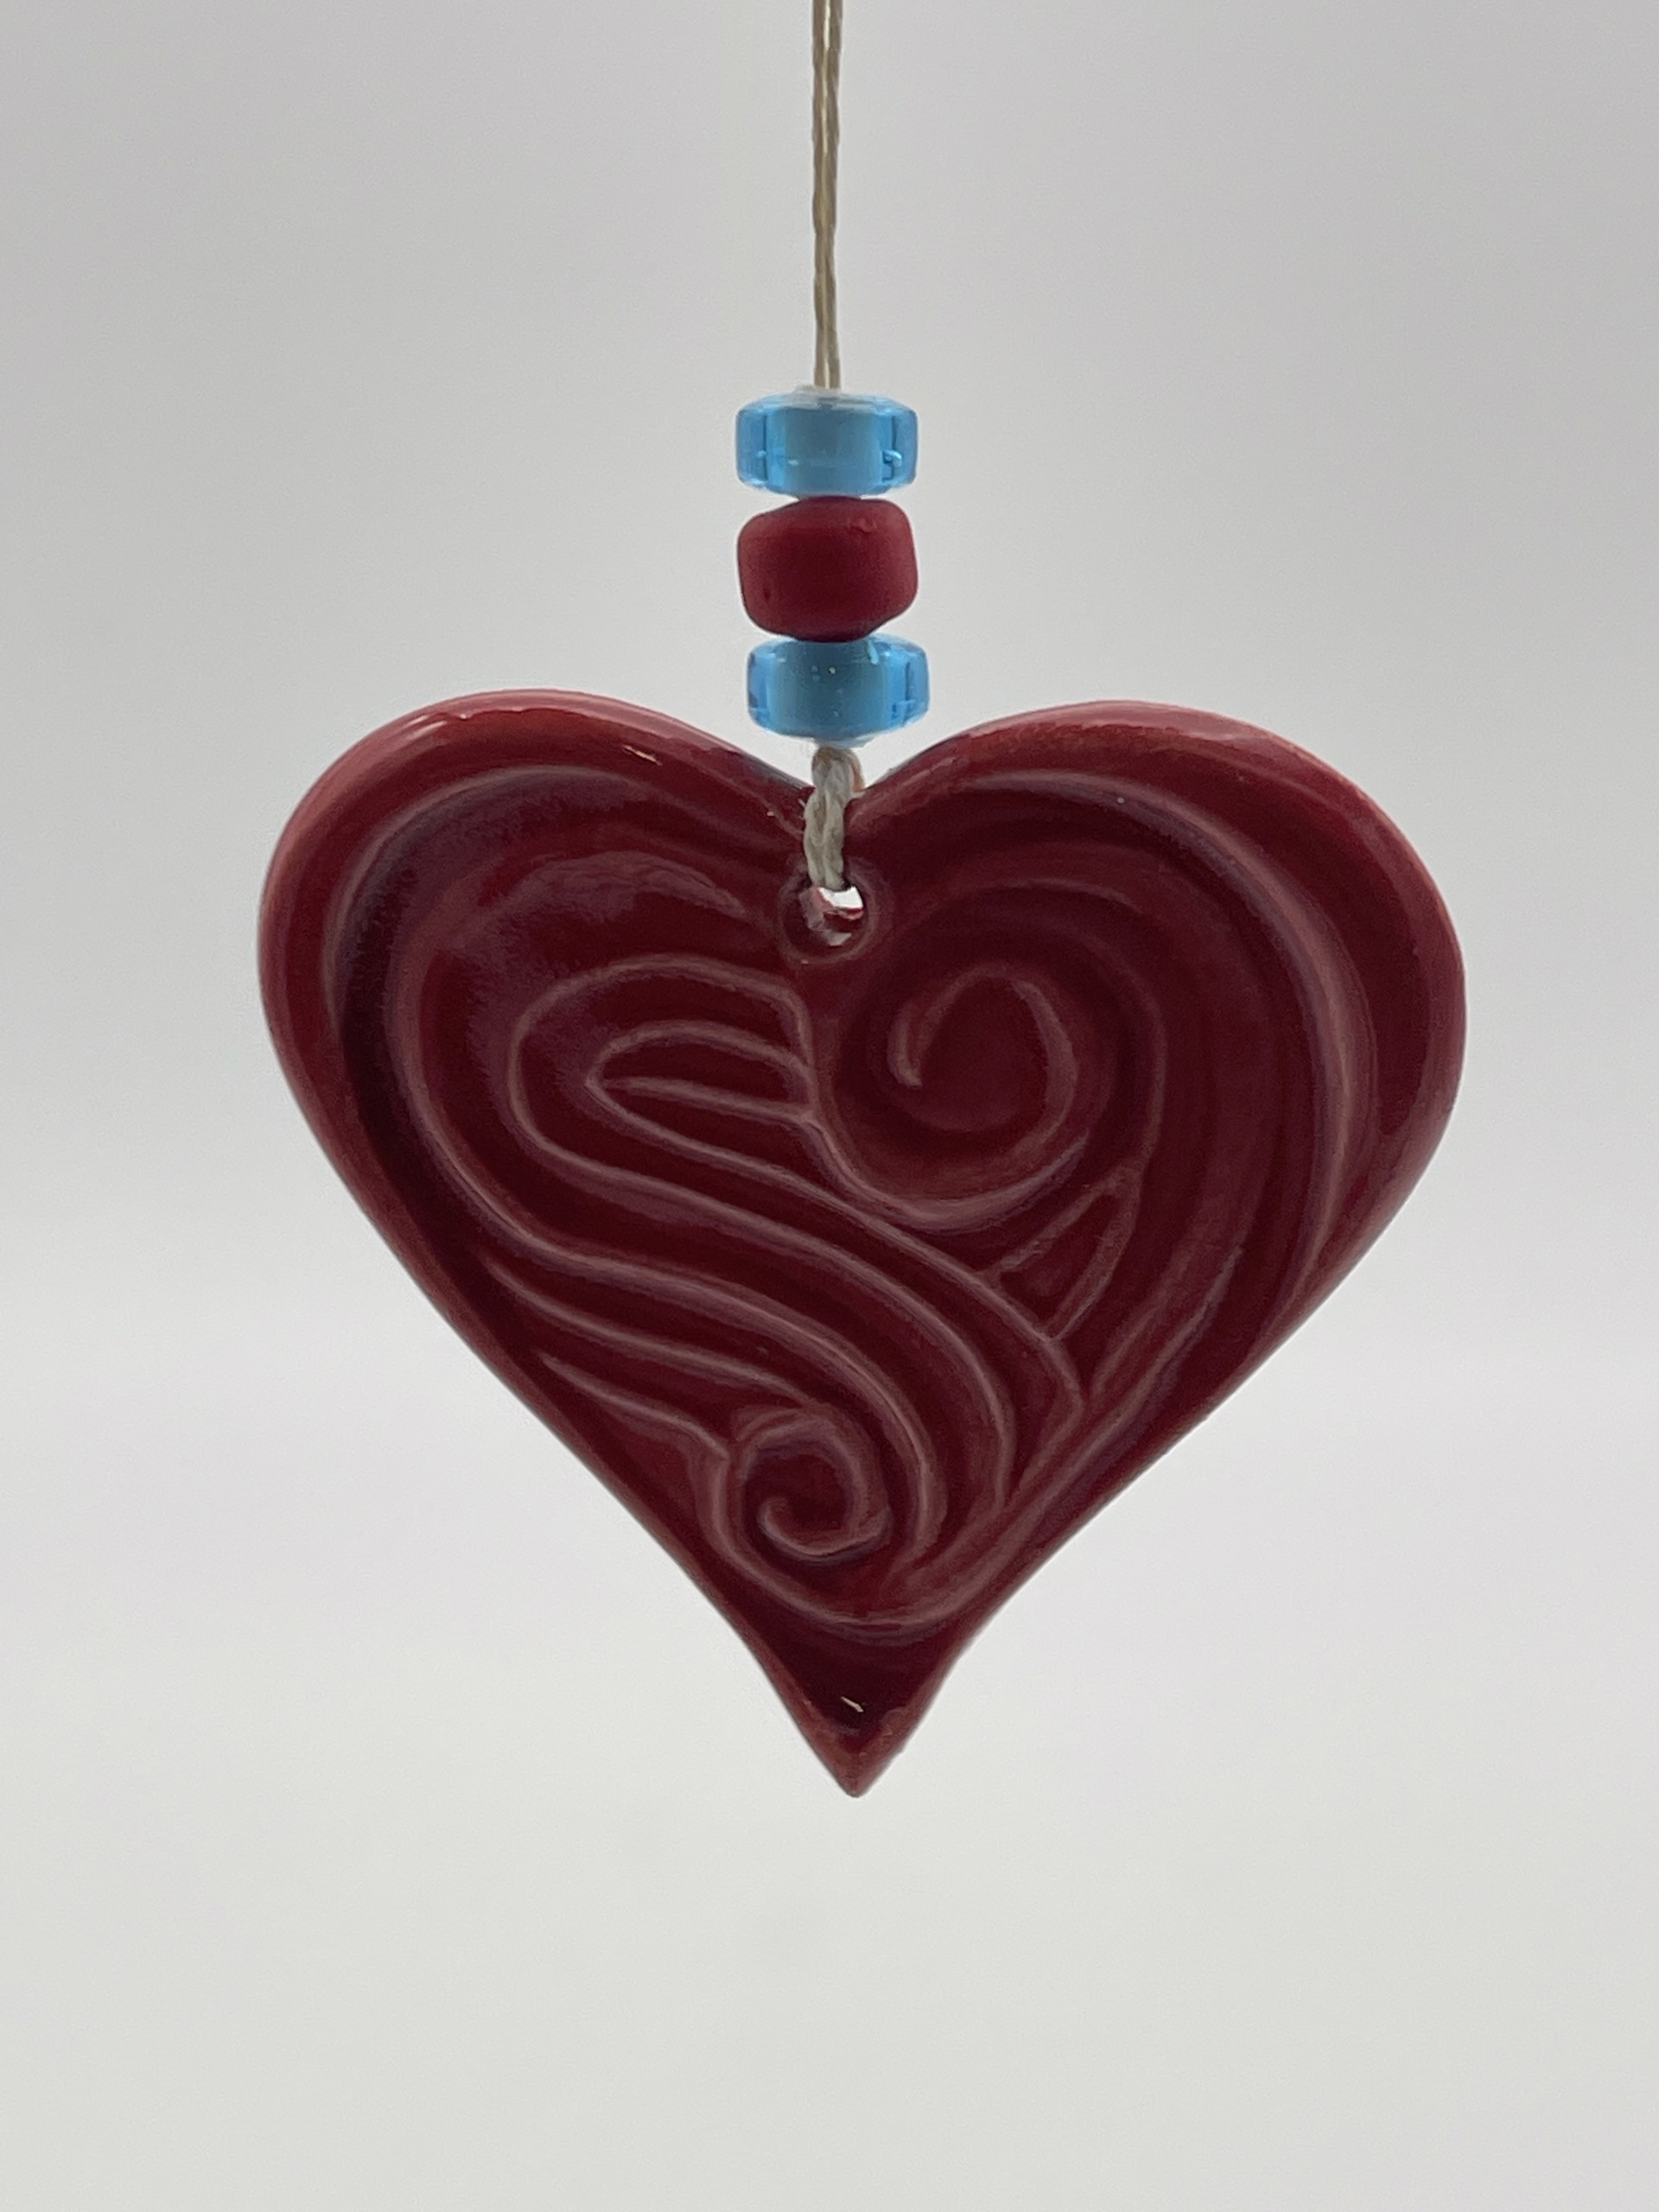 Heart Ornament by Karen Heathman